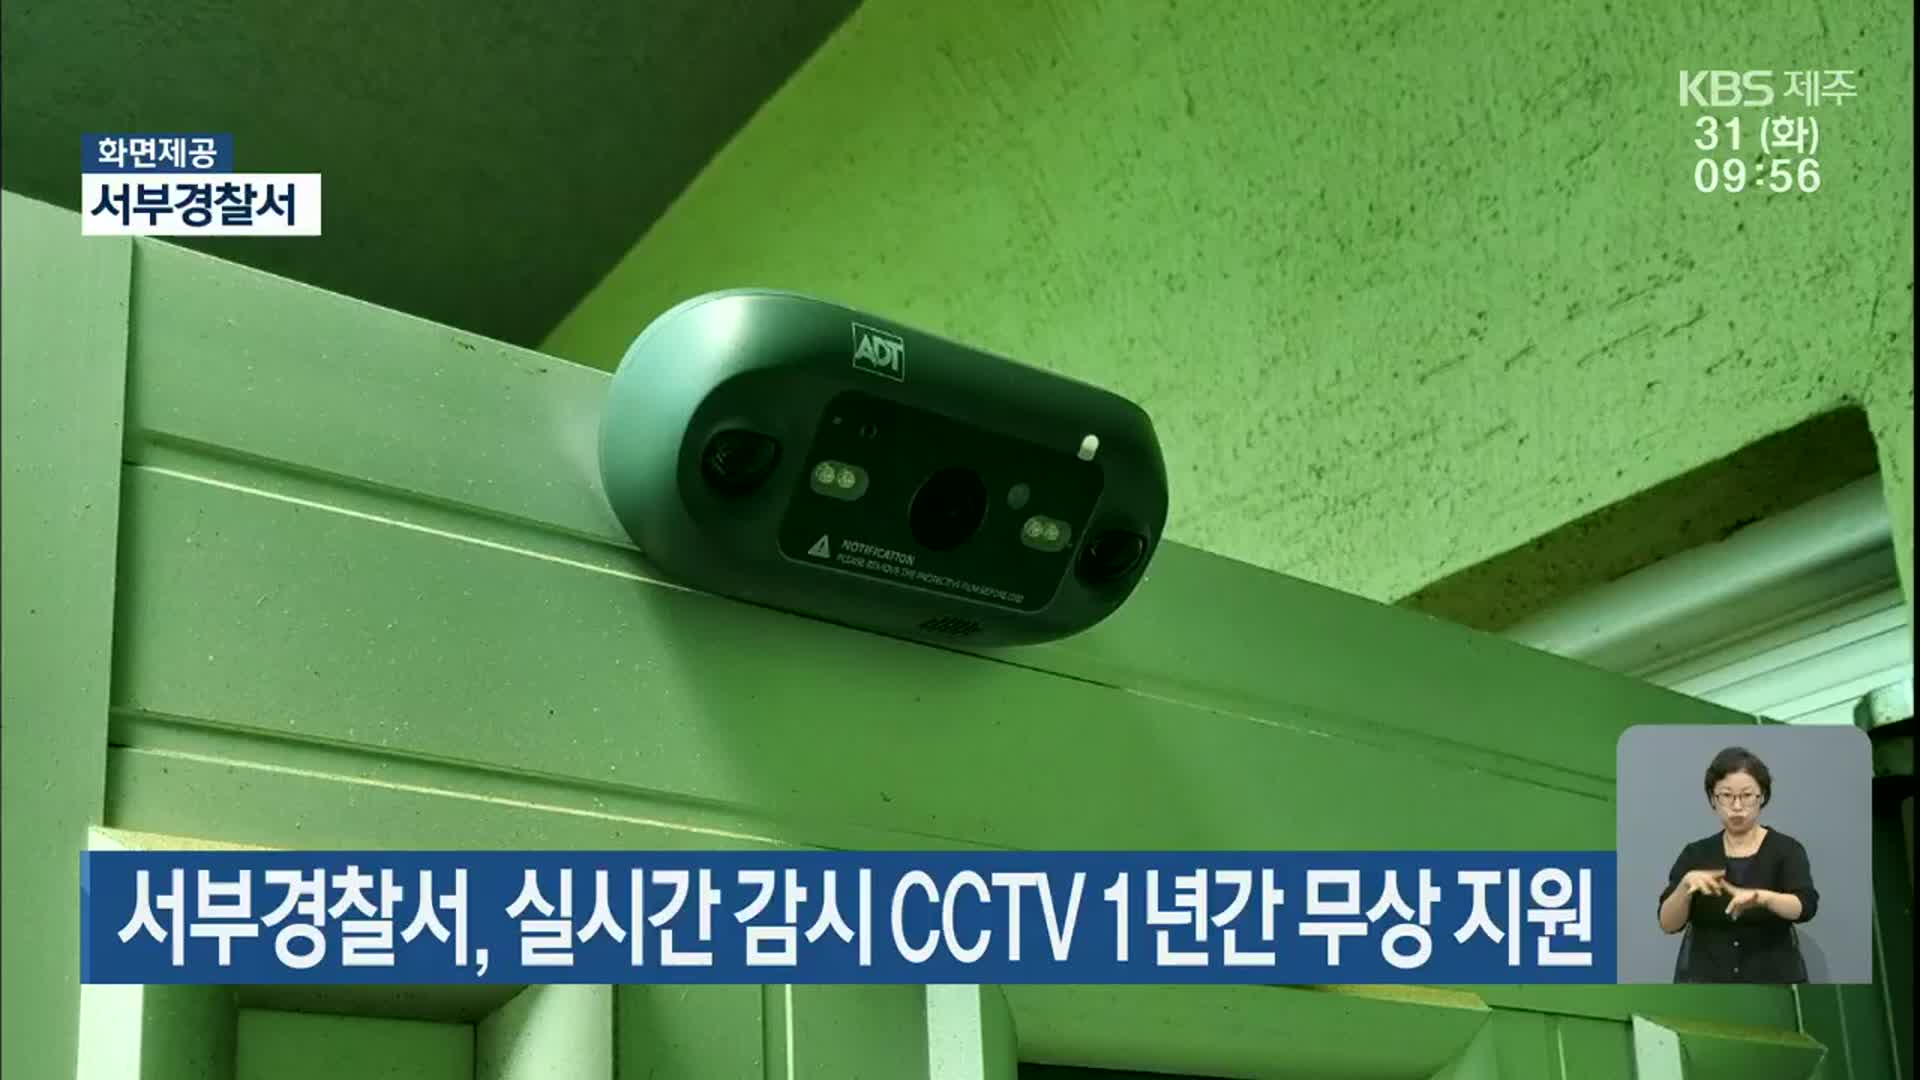 서부경찰서, 실시간 감시 CCTV 1년간 무상 지원